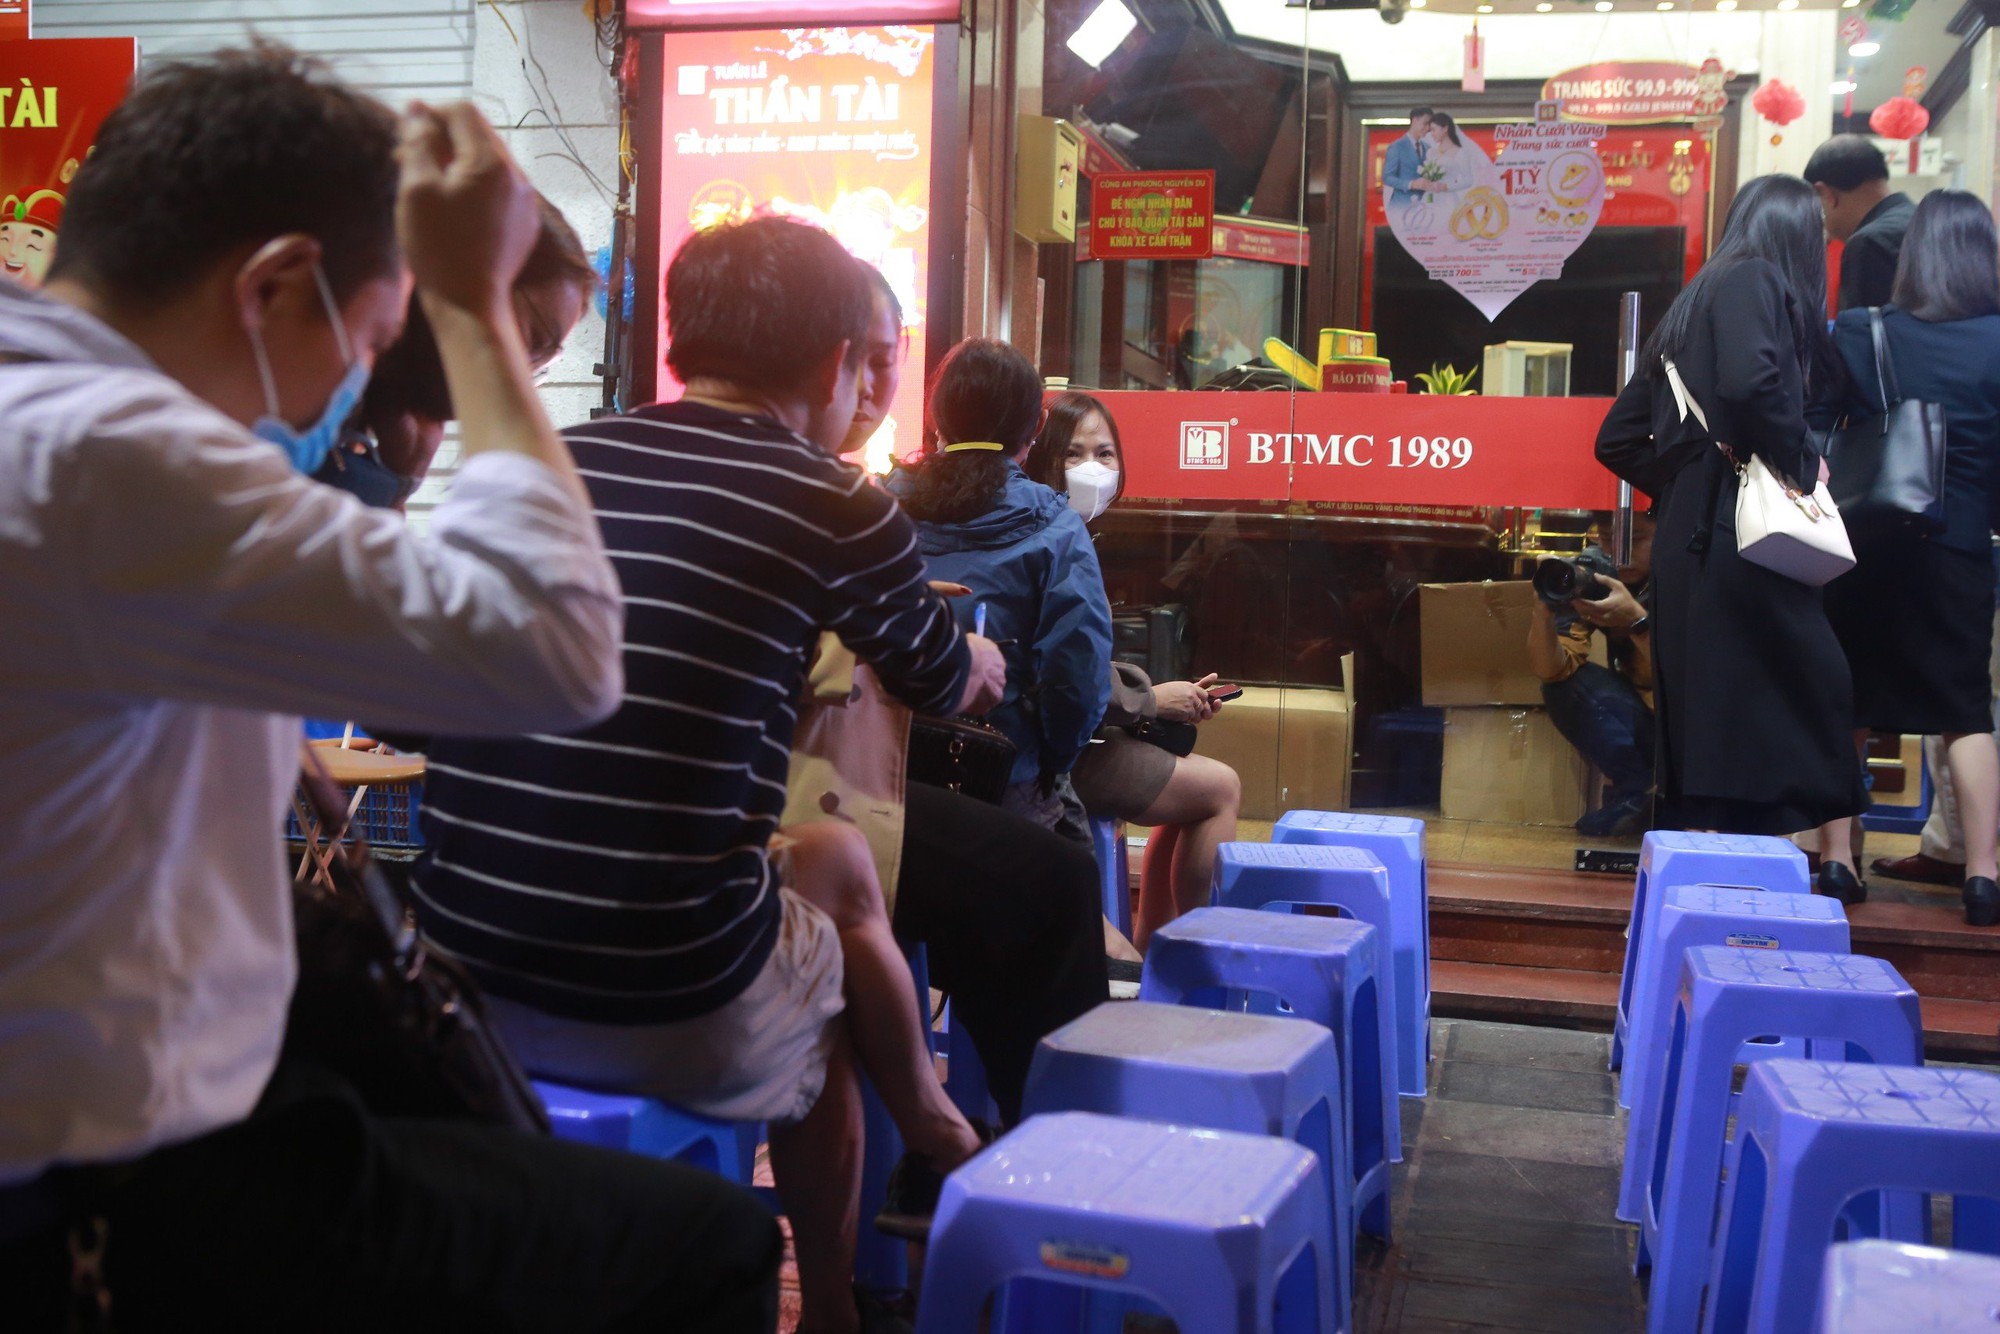 Tại tiệm vàng Bảo Tín Minh Châu, xuất hiện một số người ngồi ghế nhựa trước cửa do nhân viên chuẩn bị, tuy nhiên lác đác, không còn cảnh đông đúc.